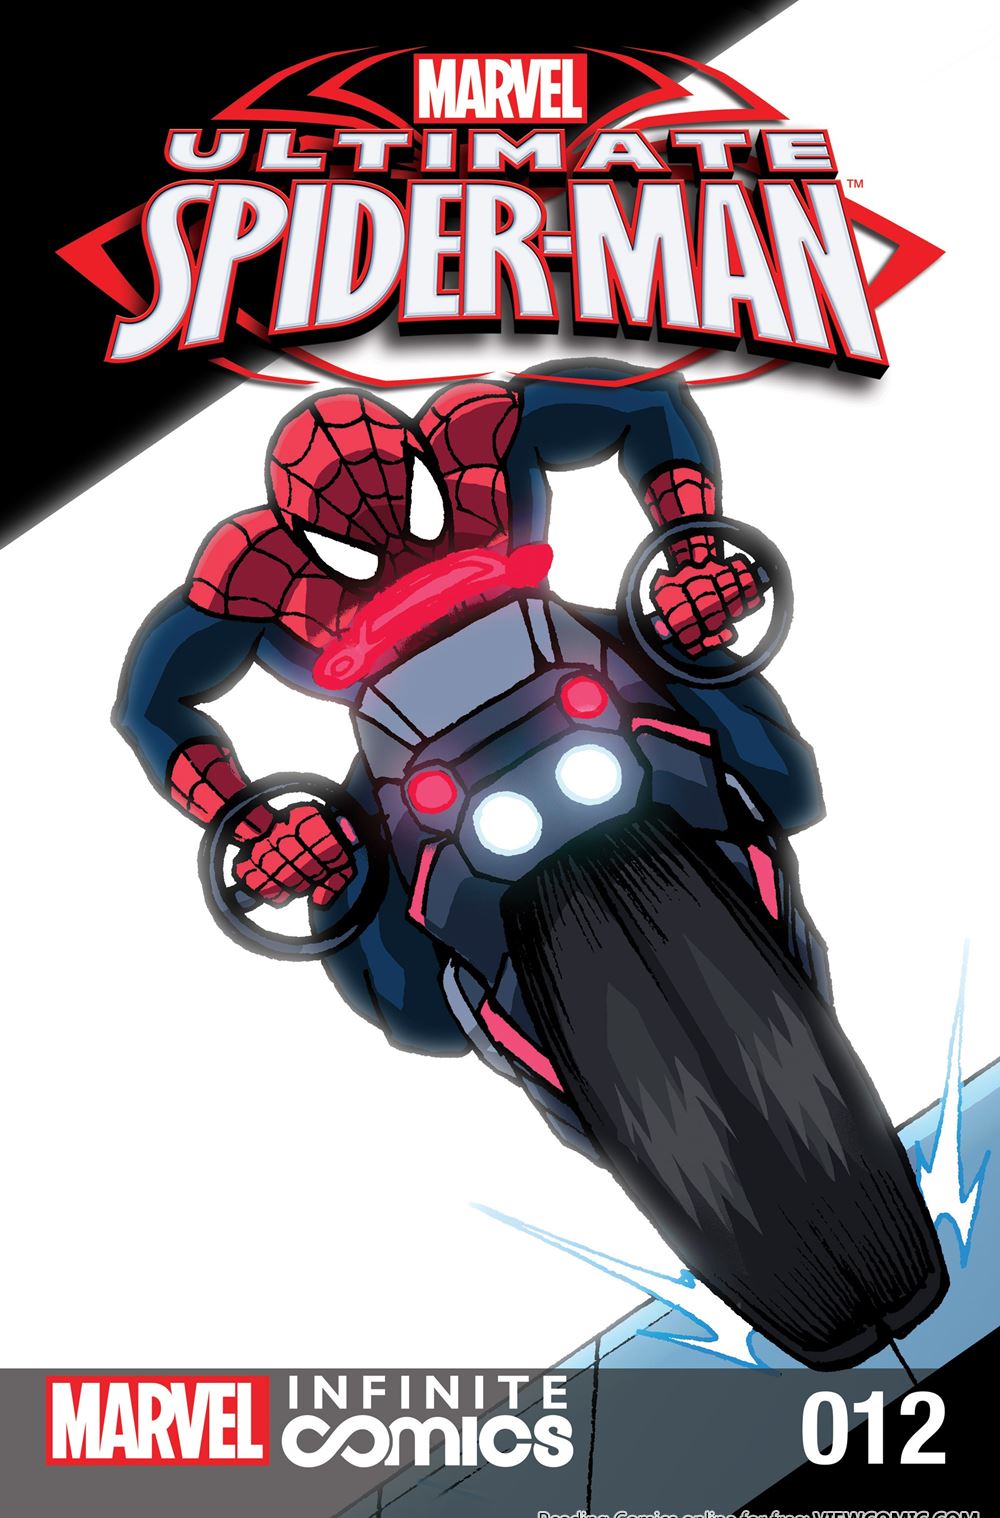 MarvelS Ultimate Spider-Man